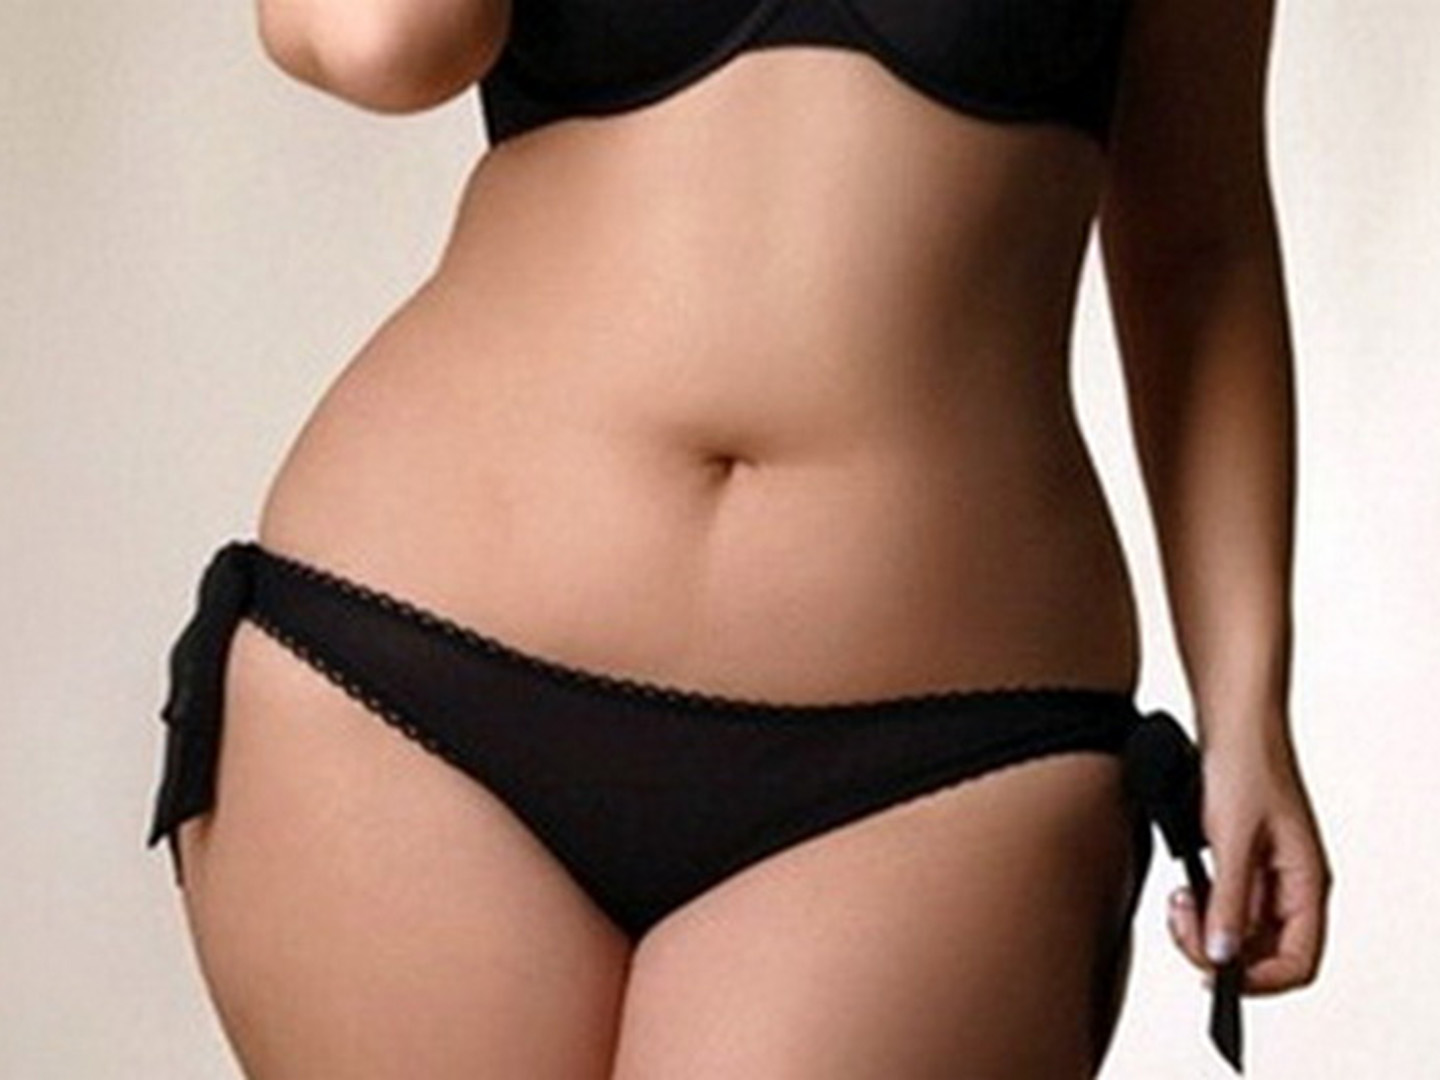 красивое полное тело женщины фото